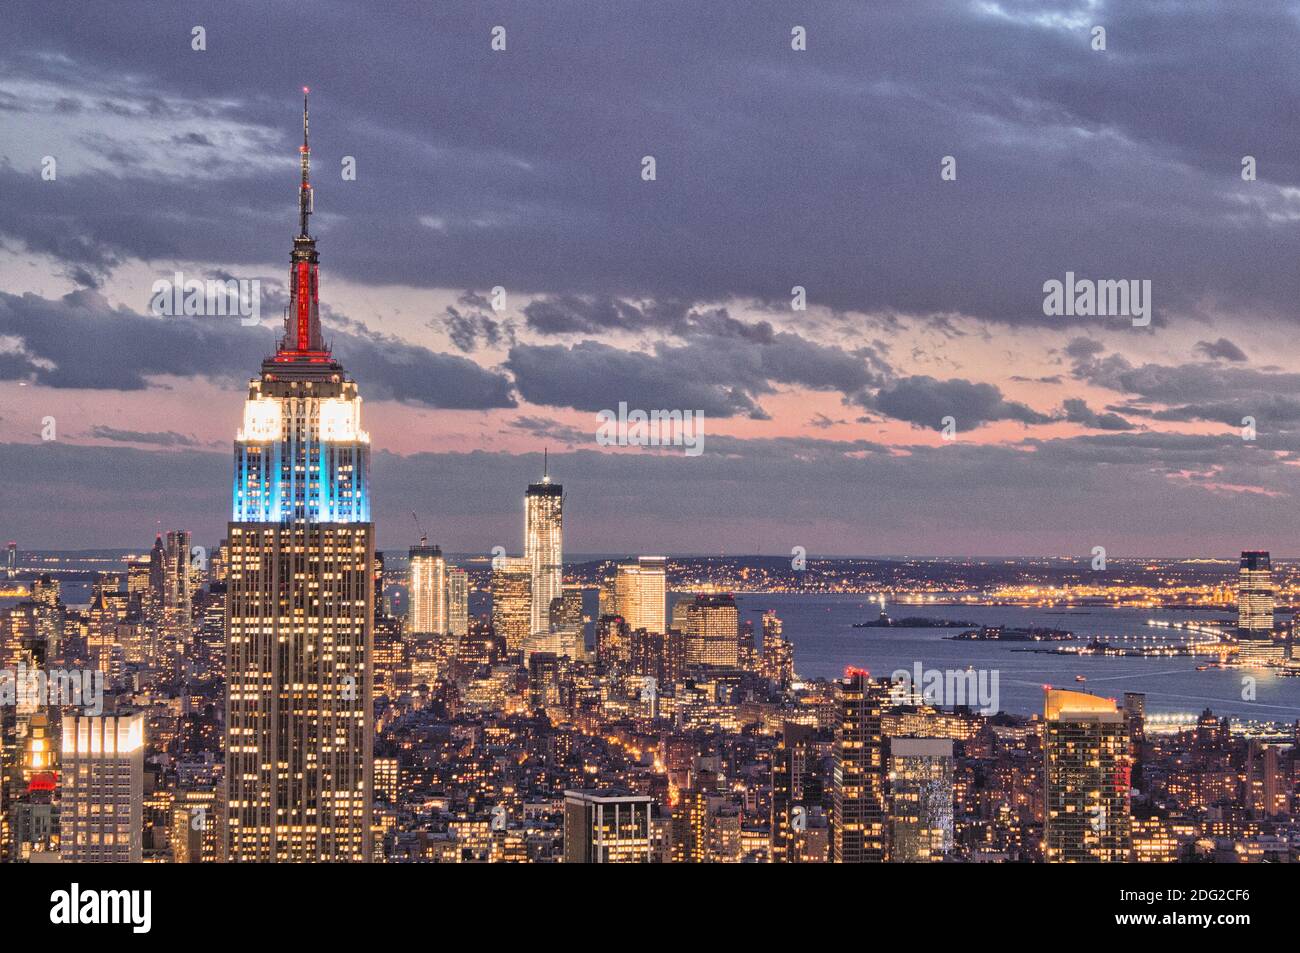 Die enge Ansammlung von Wolkenkratzern, die Midtown Manhattan mit dem berühmten Empire State Building am prominentesten bewohnen. Stockfoto